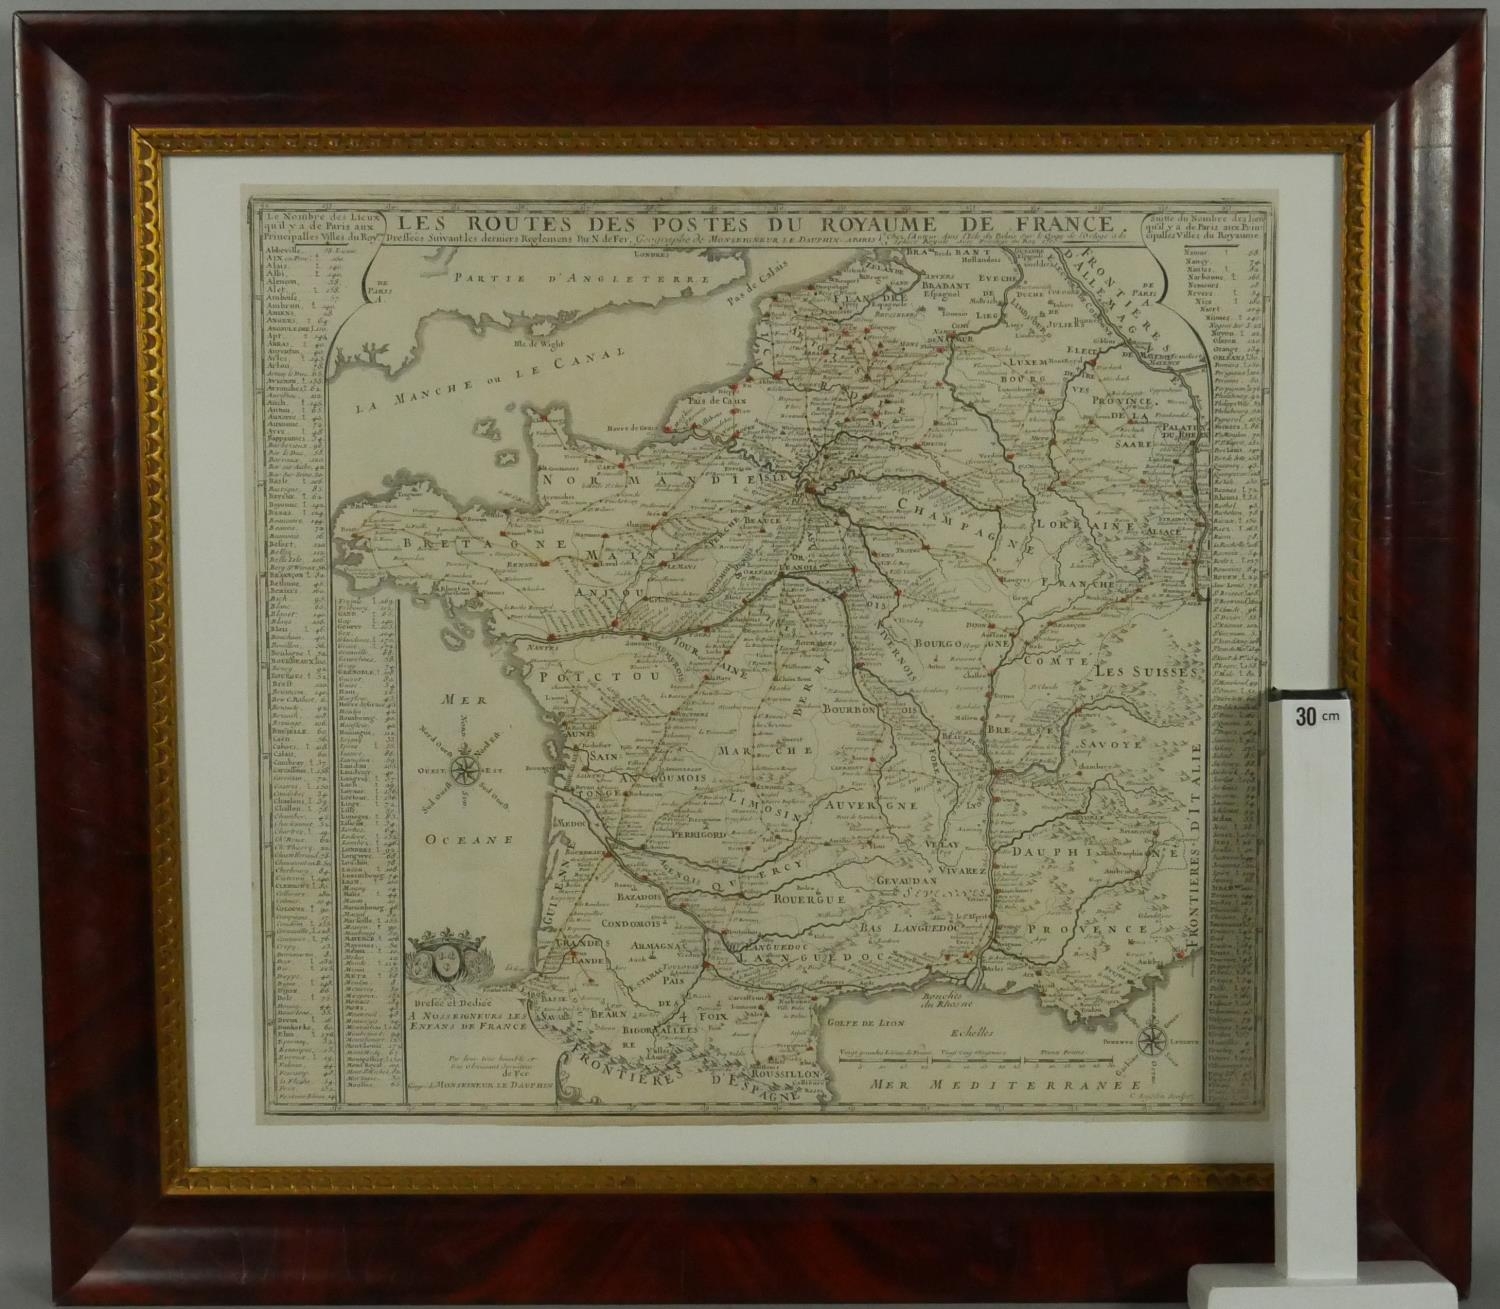 A framed and glazed antique map of 'Les Routes des postes du royaume de France' by Nicolas de Fer. - Image 5 of 5